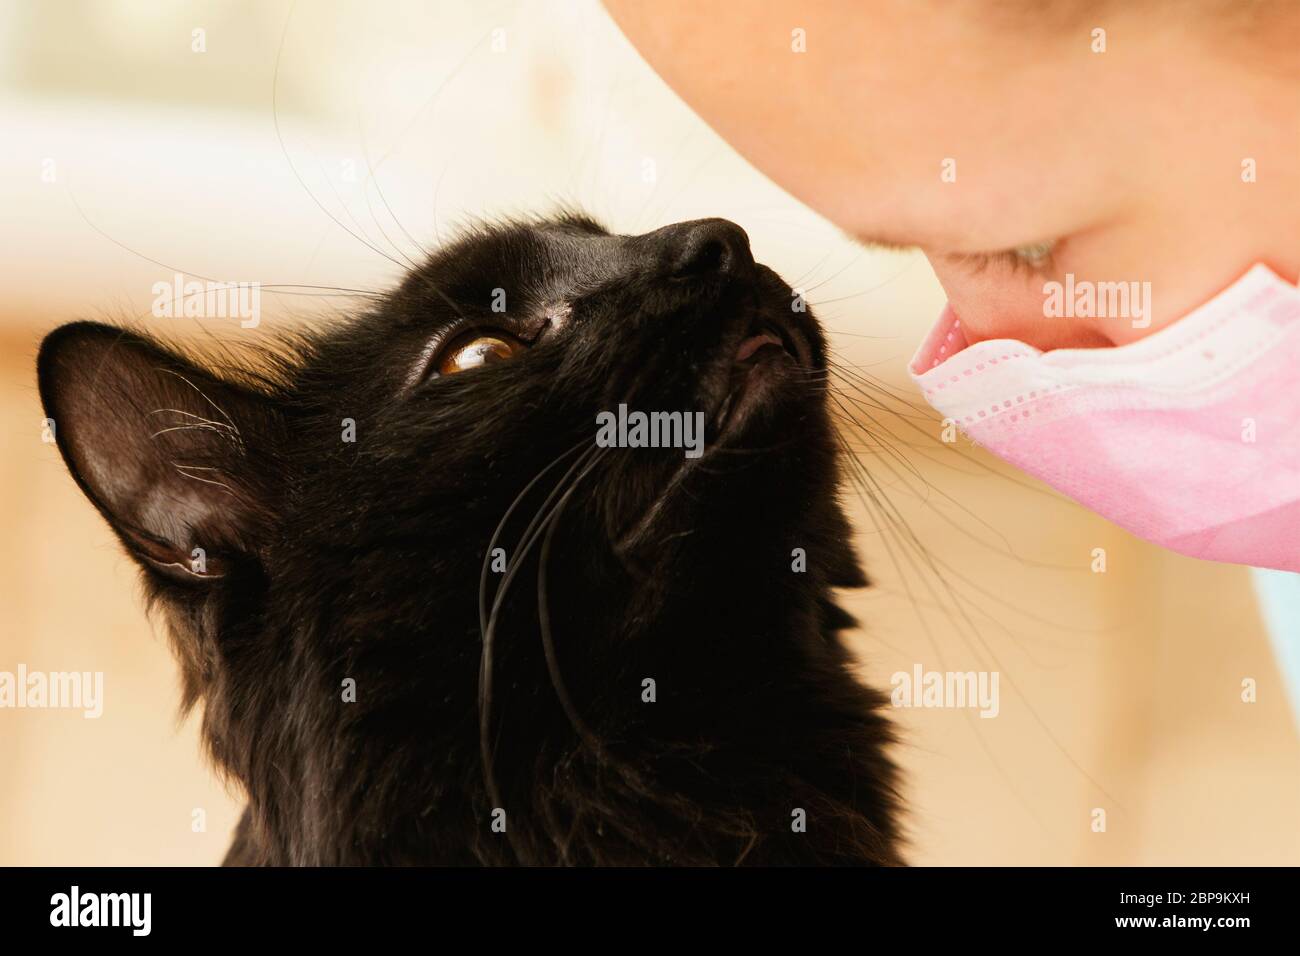 Une fille dans un masque médical isolé à la maison communique avec un chat noir. Banque D'Images